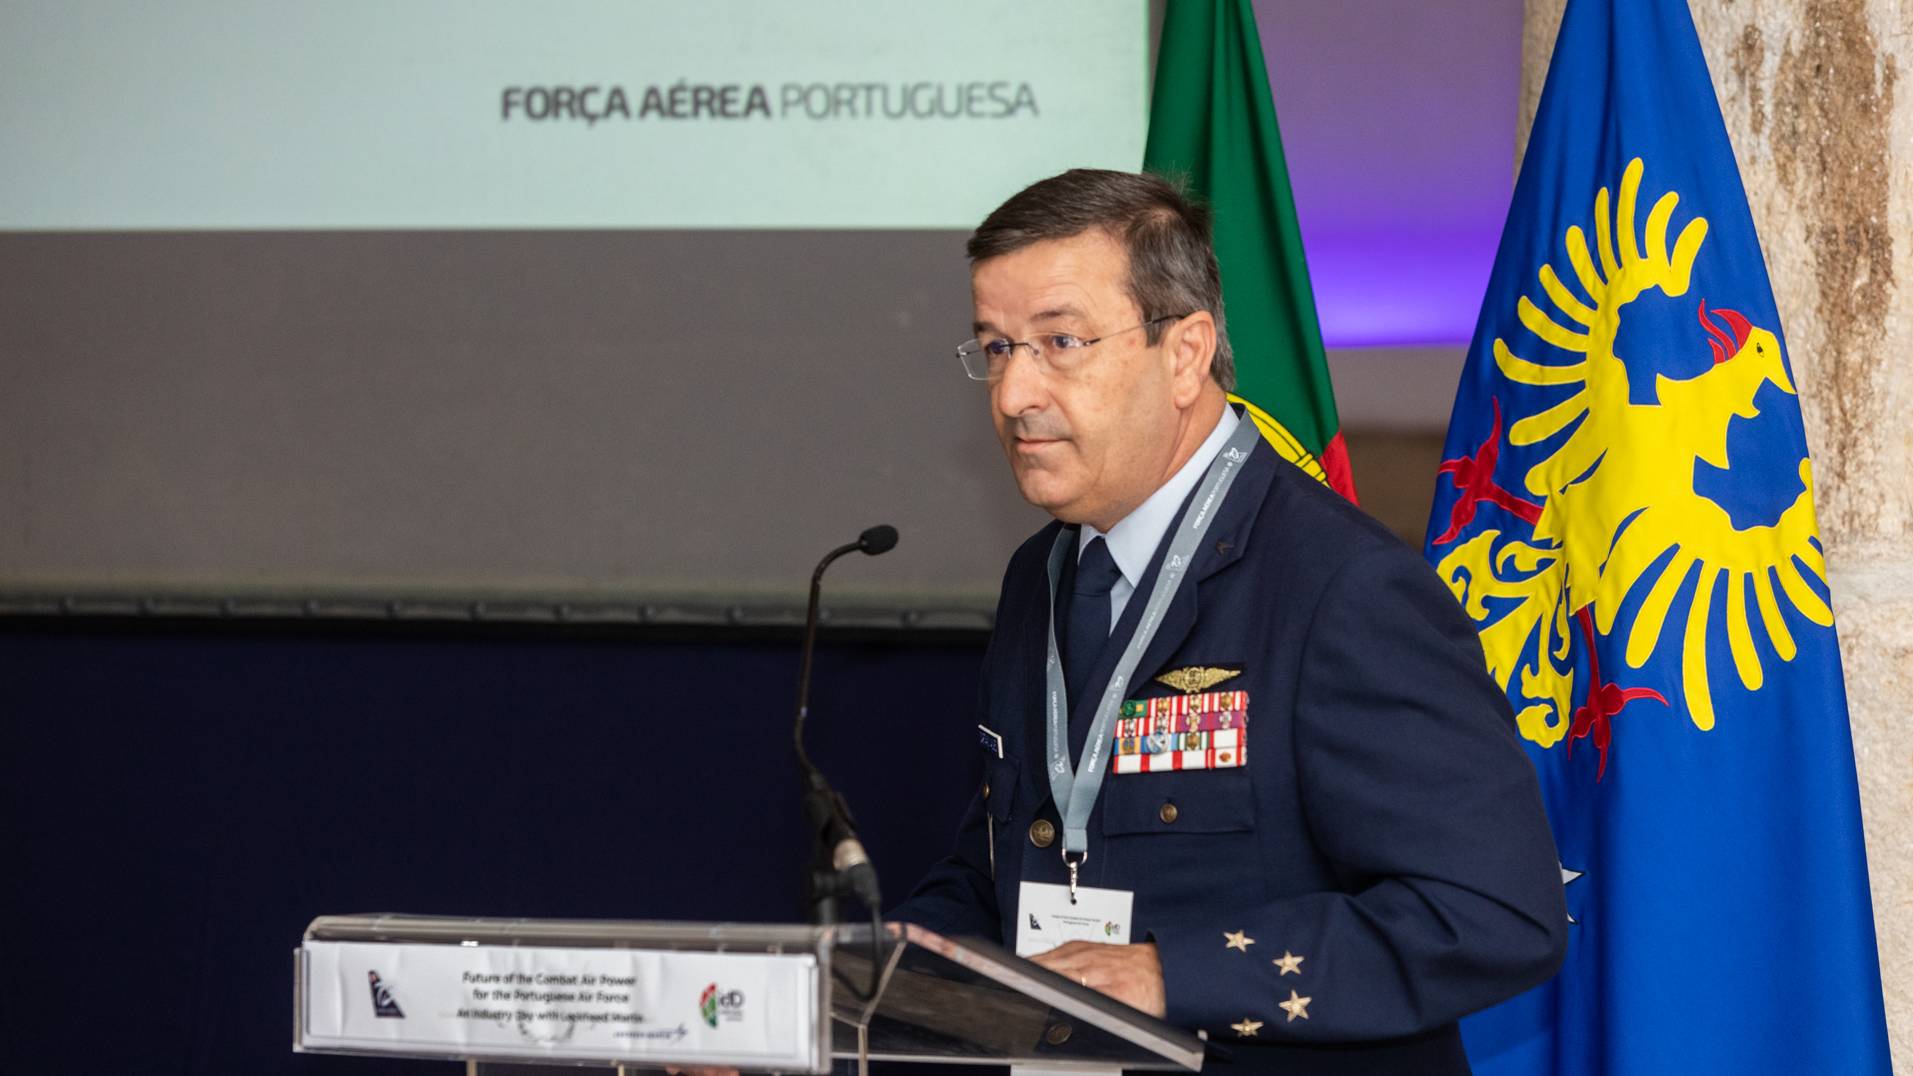 Seminário – O Futuro da Defesa Aérea em Portugal